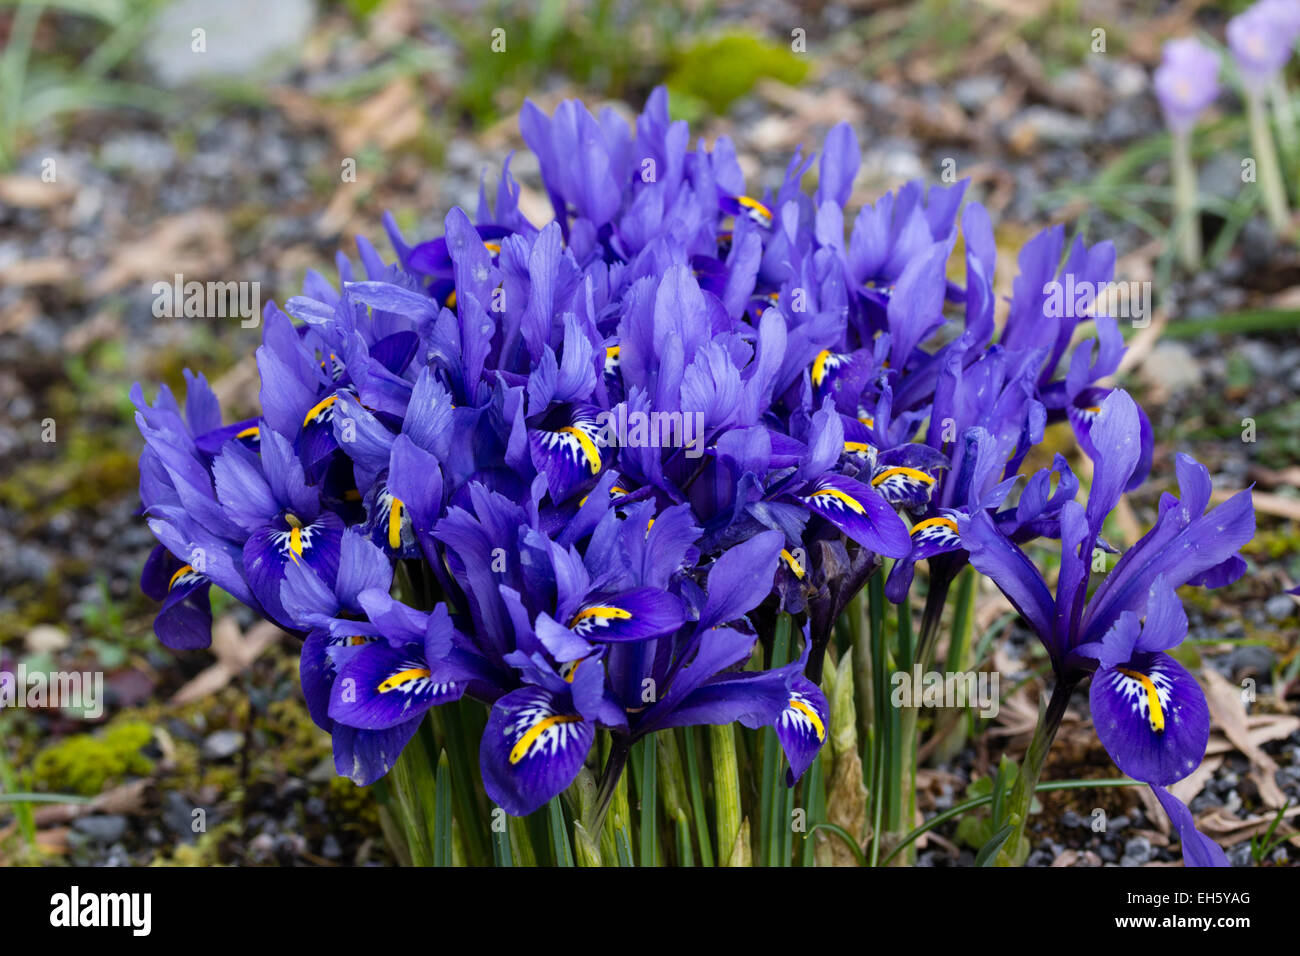 Massed flowers of the winter flowering dwarf Iris reticulata 'Harmony' Stock Photo